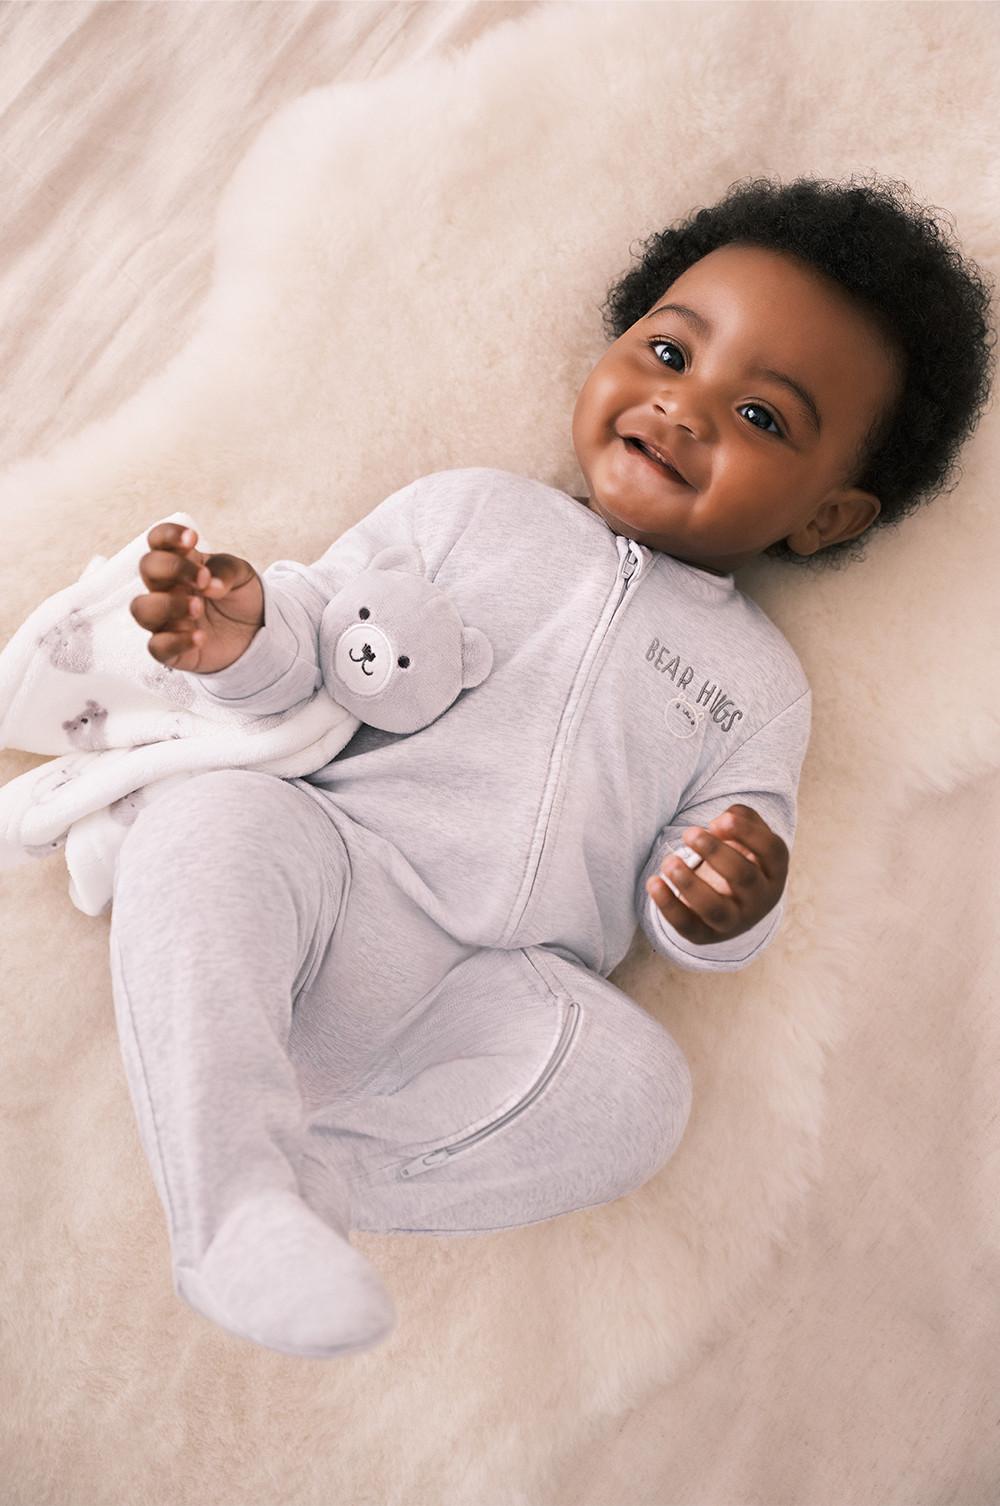 🌟 La mejor selección de ropa de bebé recién nacido